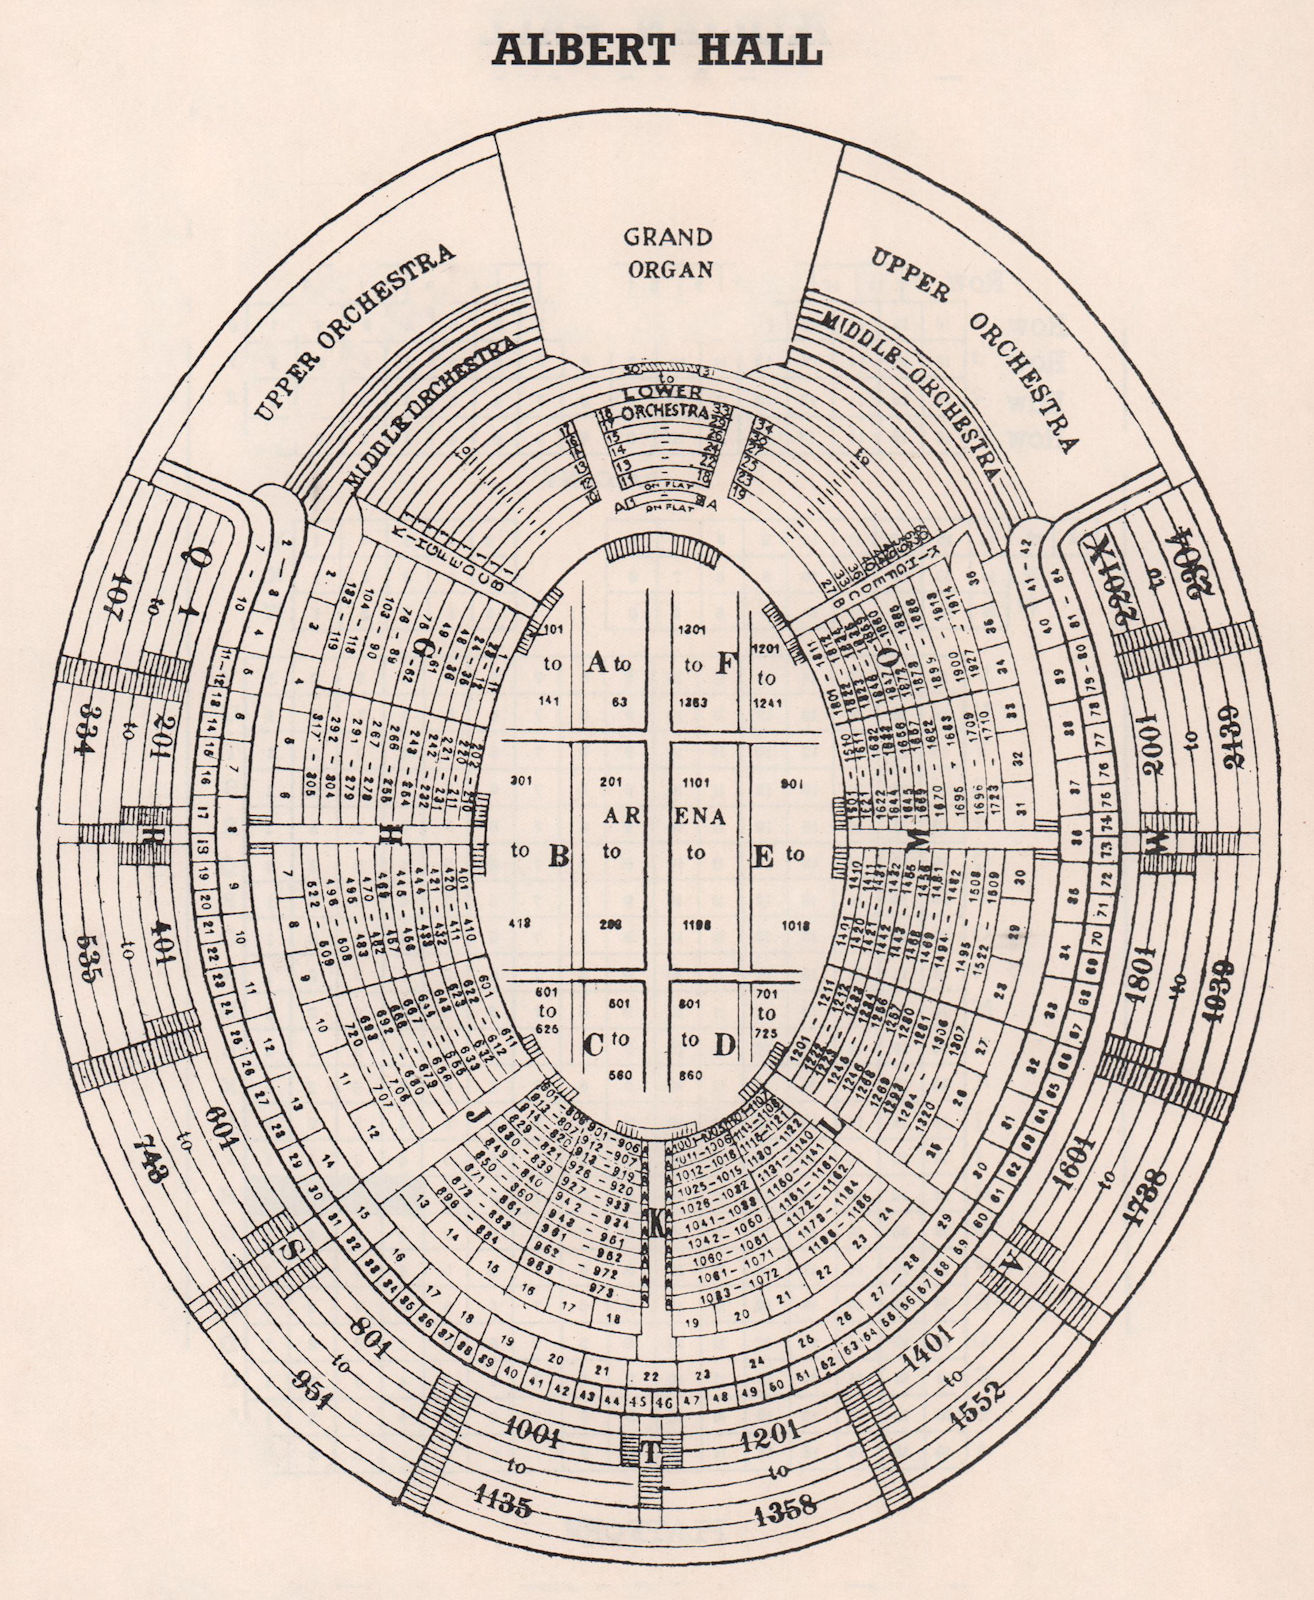 ROYAL ALBERT HALL vintage seating plan. London. Concert Hall 1937 old print